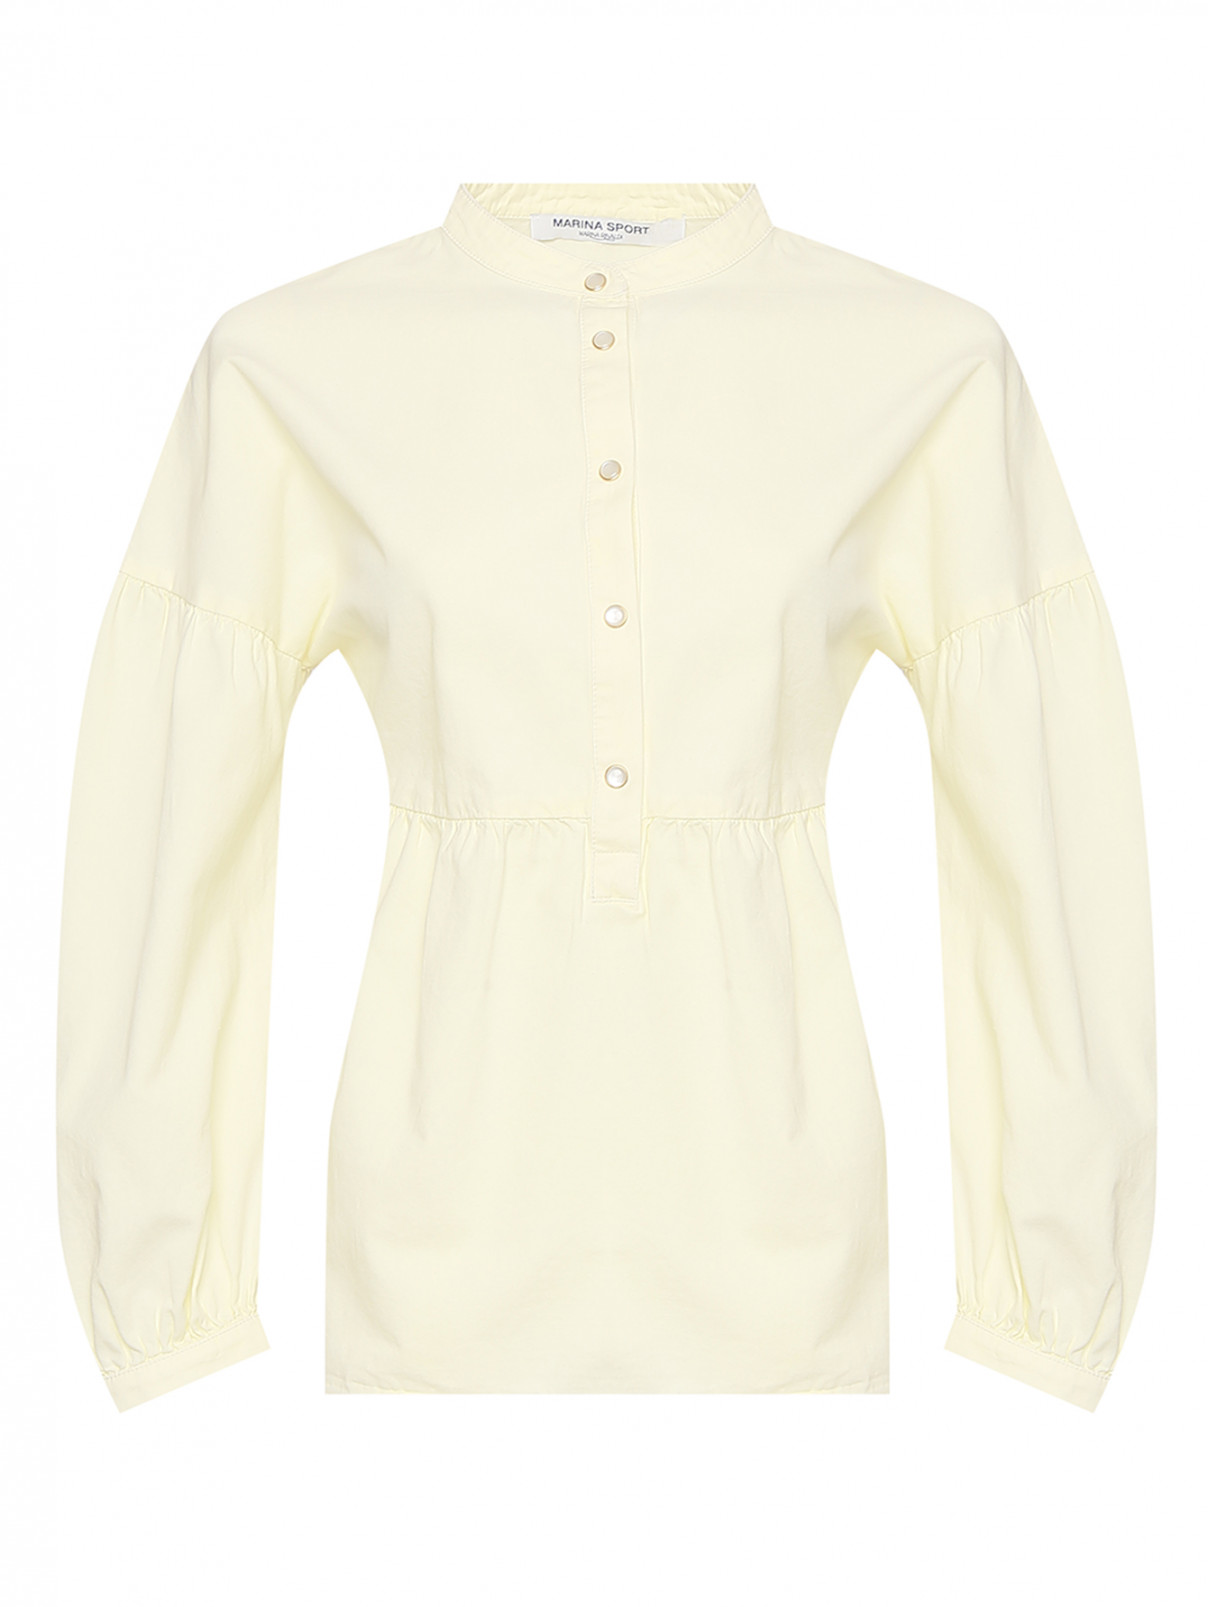 Блуза из хлопка на кнопках Marina Rinaldi  –  Общий вид  – Цвет:  Желтый